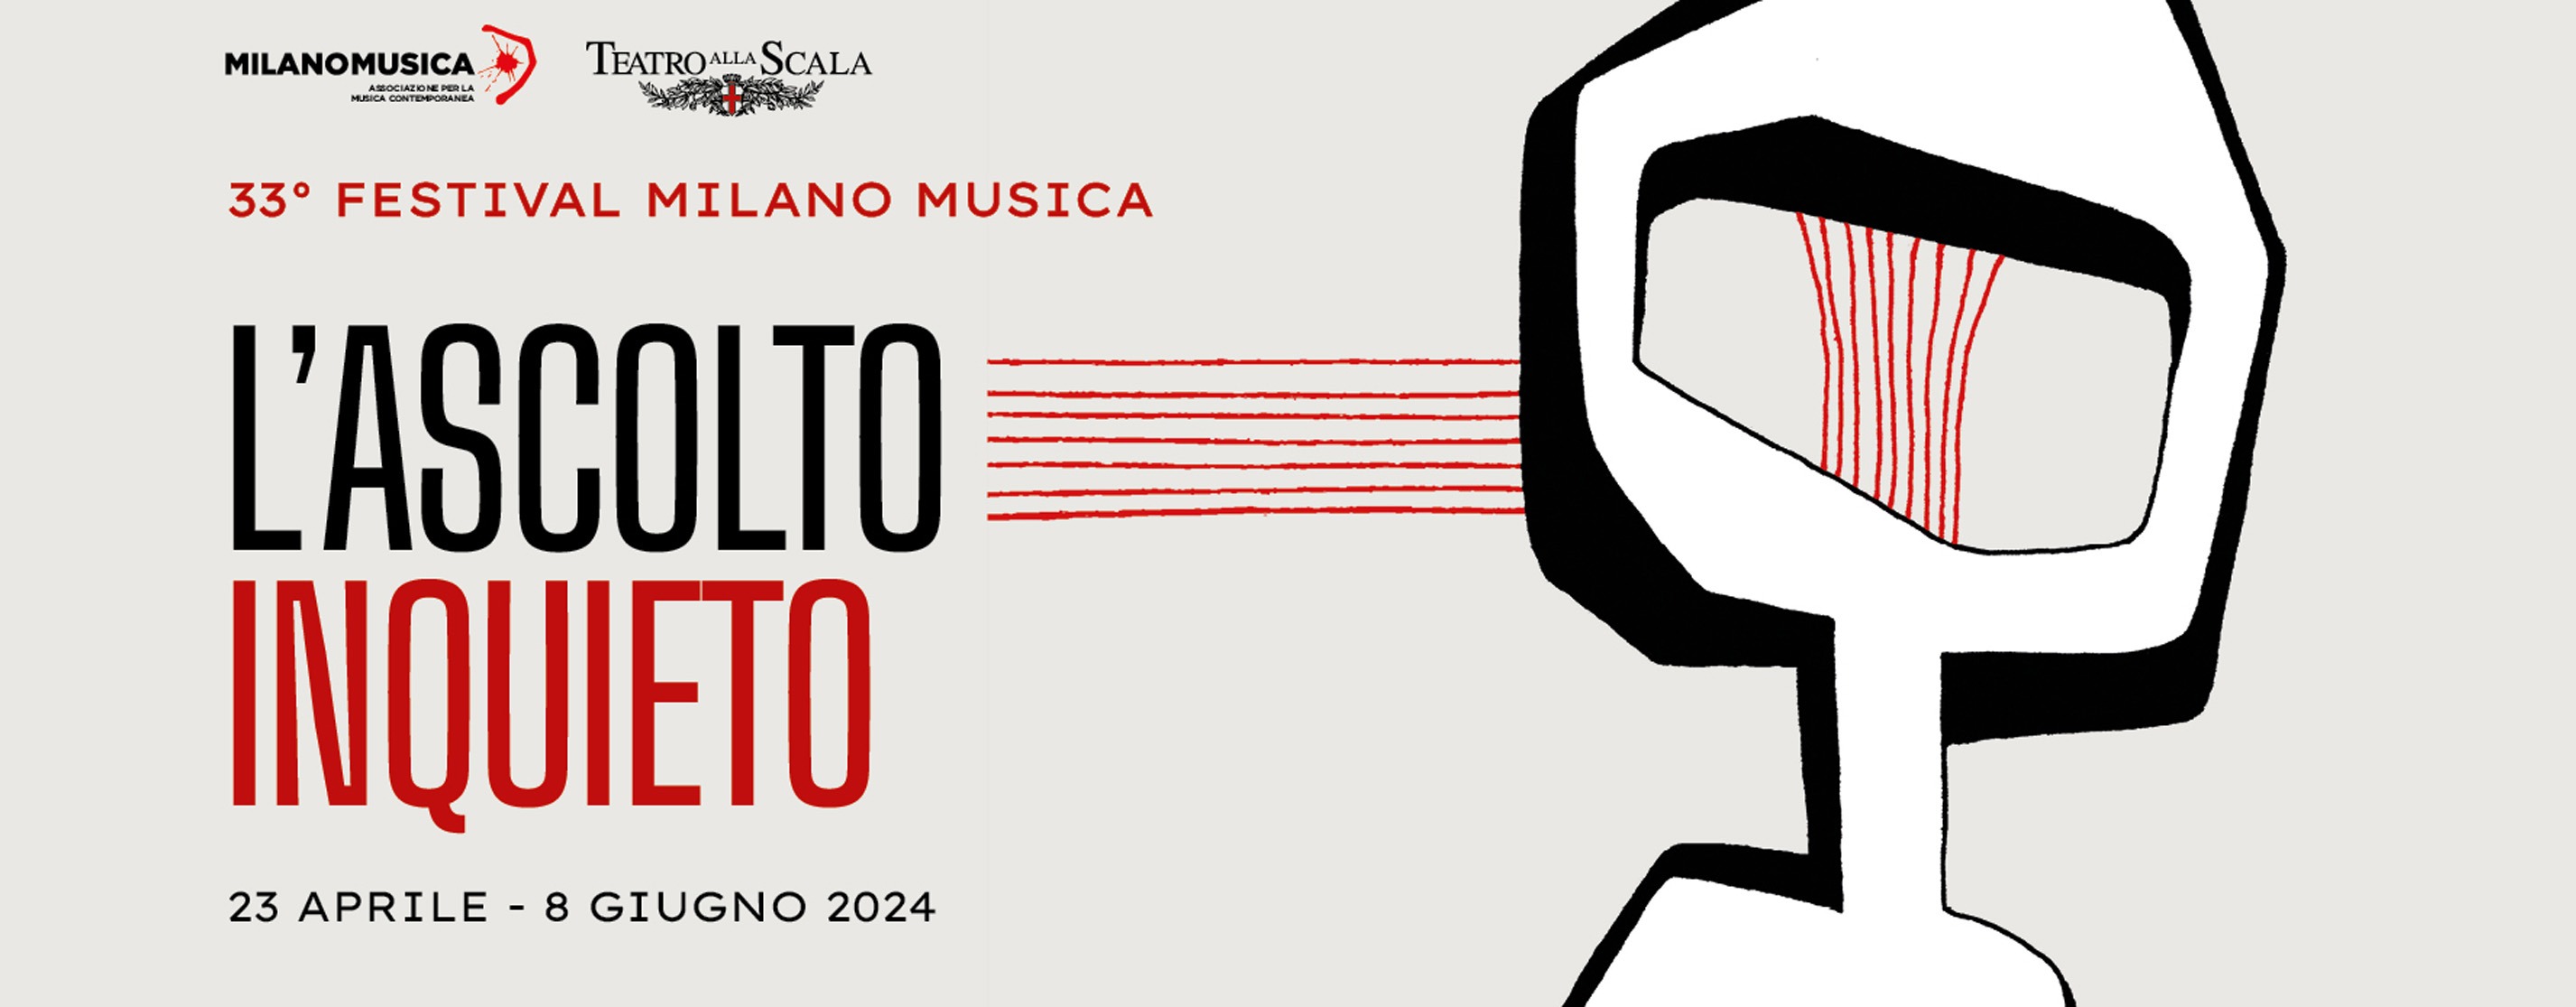 grafica header milano musica 2024